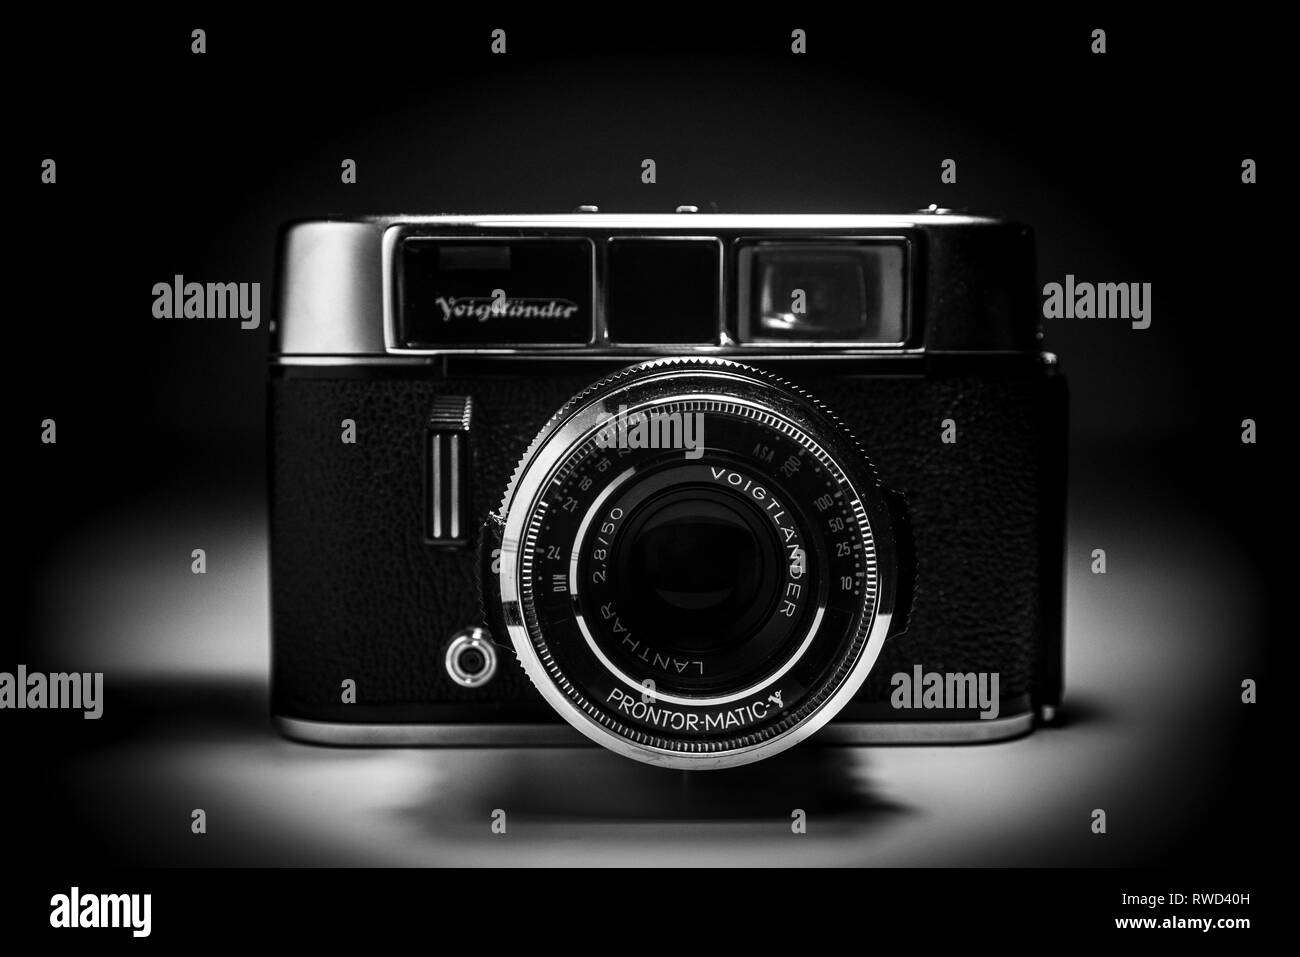 Un appareil photo Voigtländer de temps anciens. Caméra analogique en noir et blanc. Banque D'Images